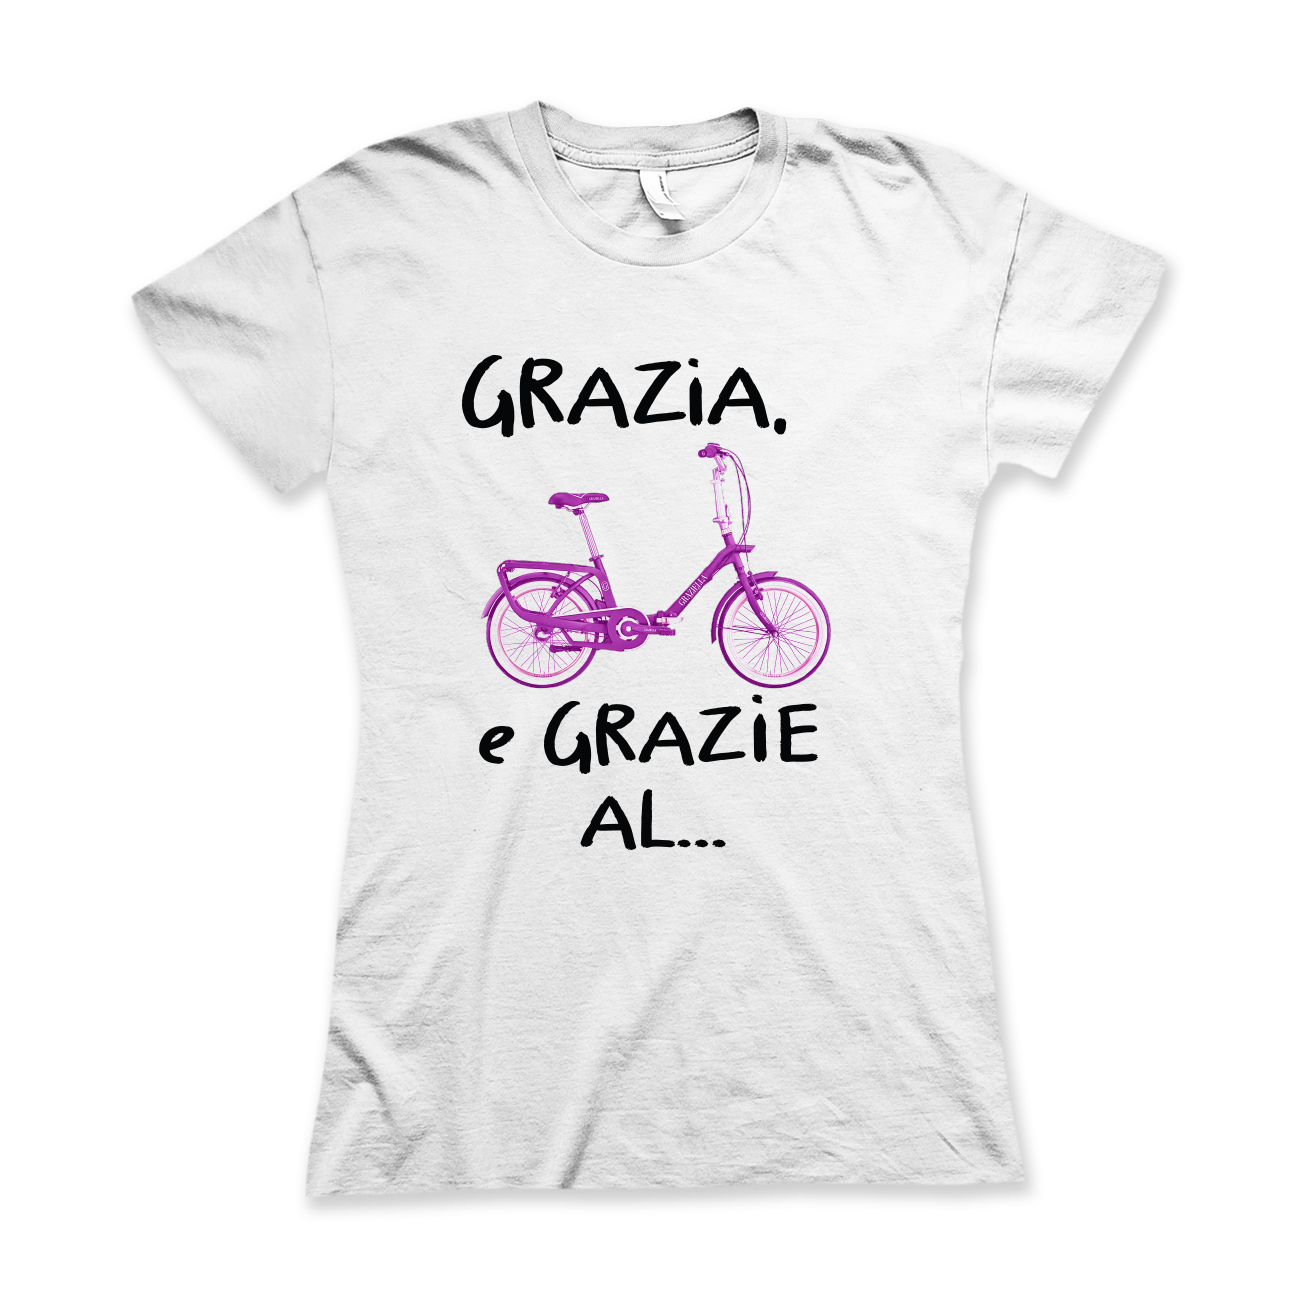 Grazia, Graziella